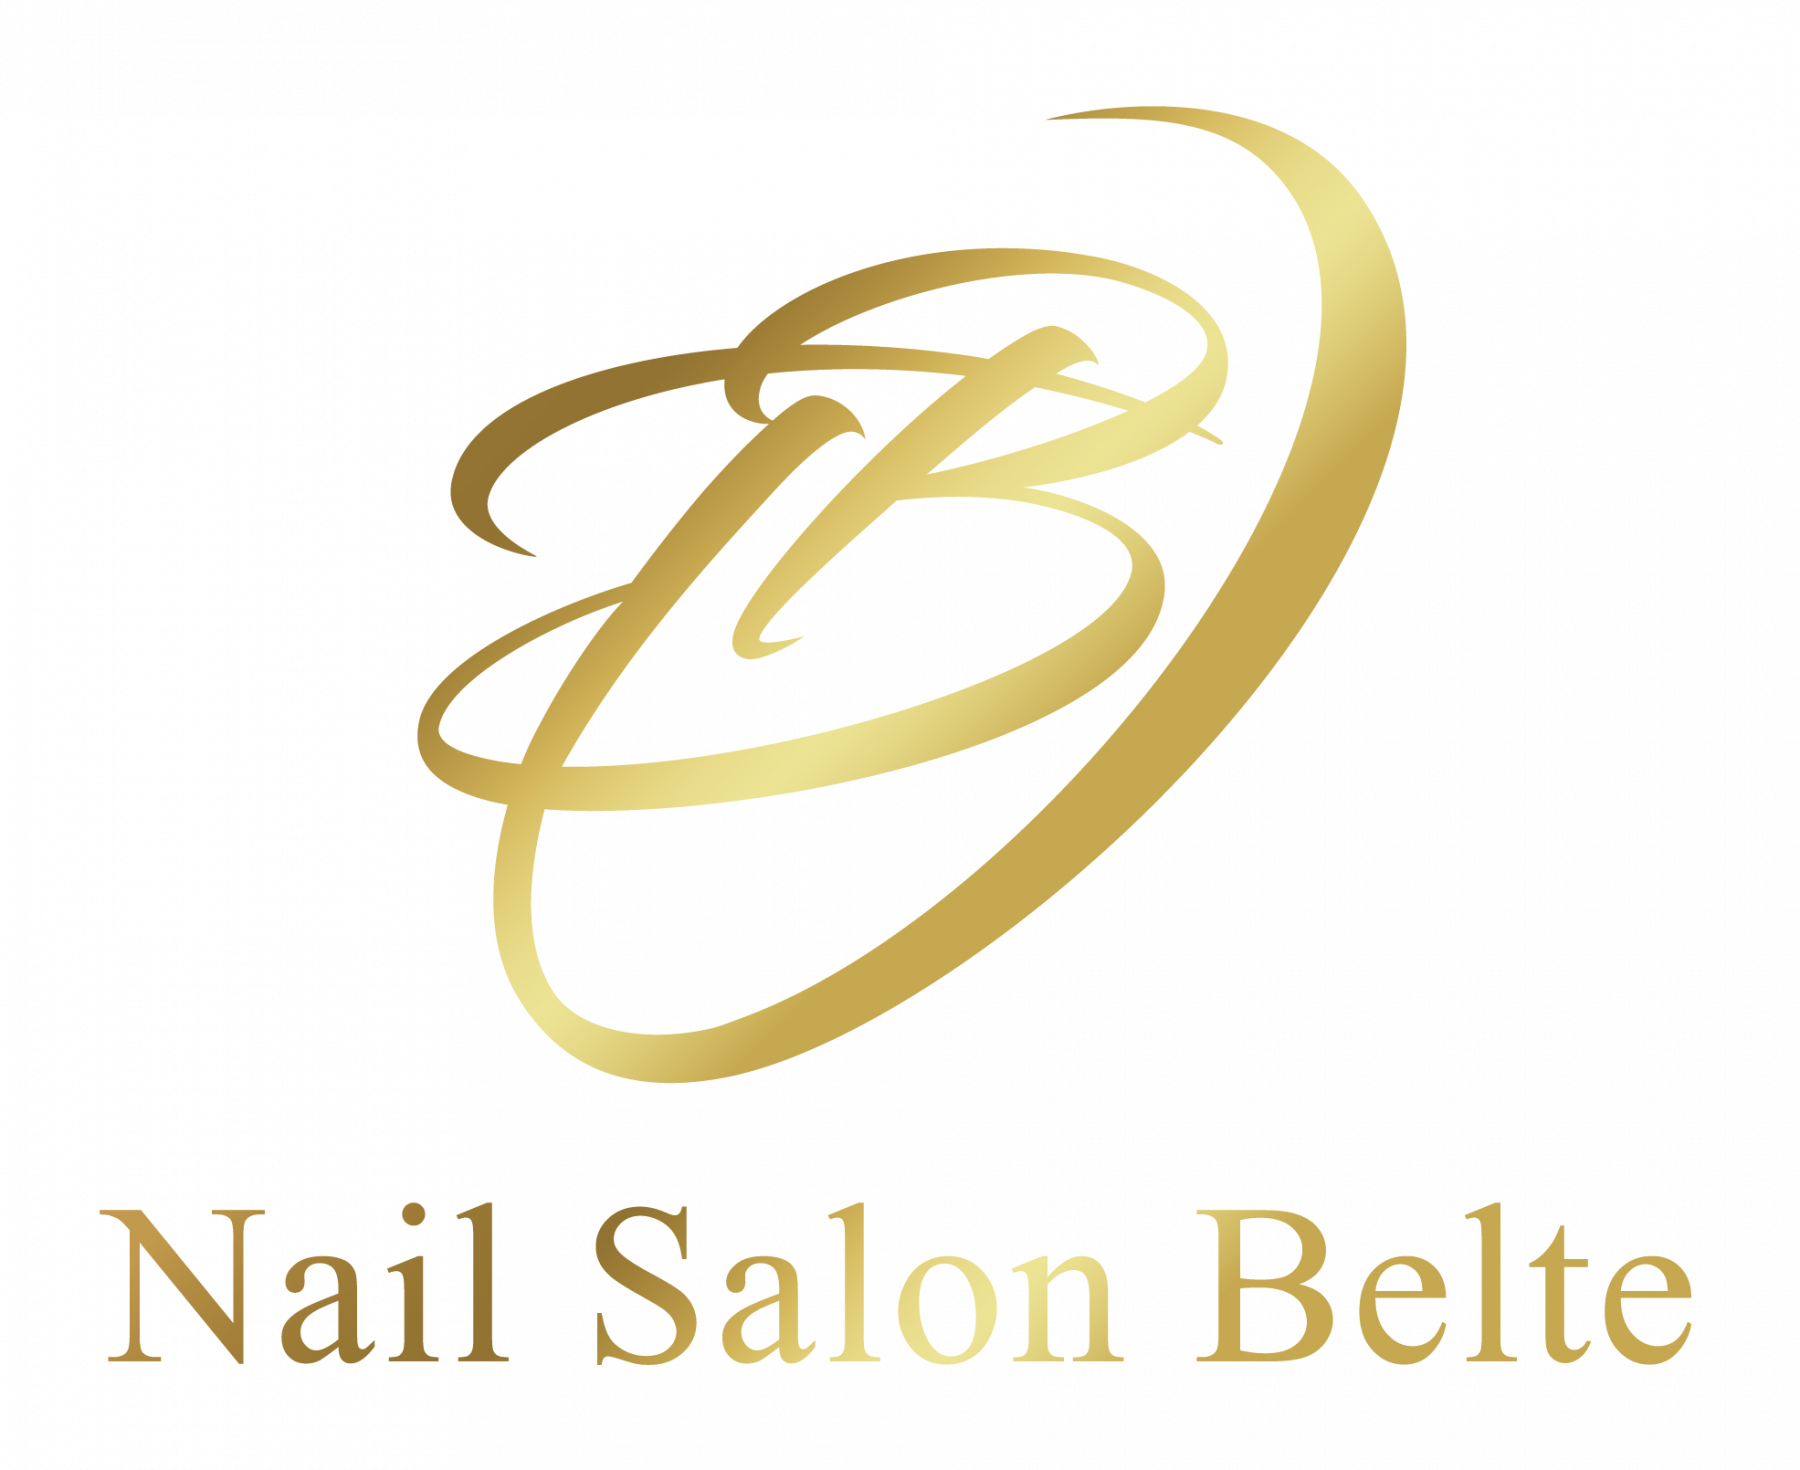 Nail Salon Belte